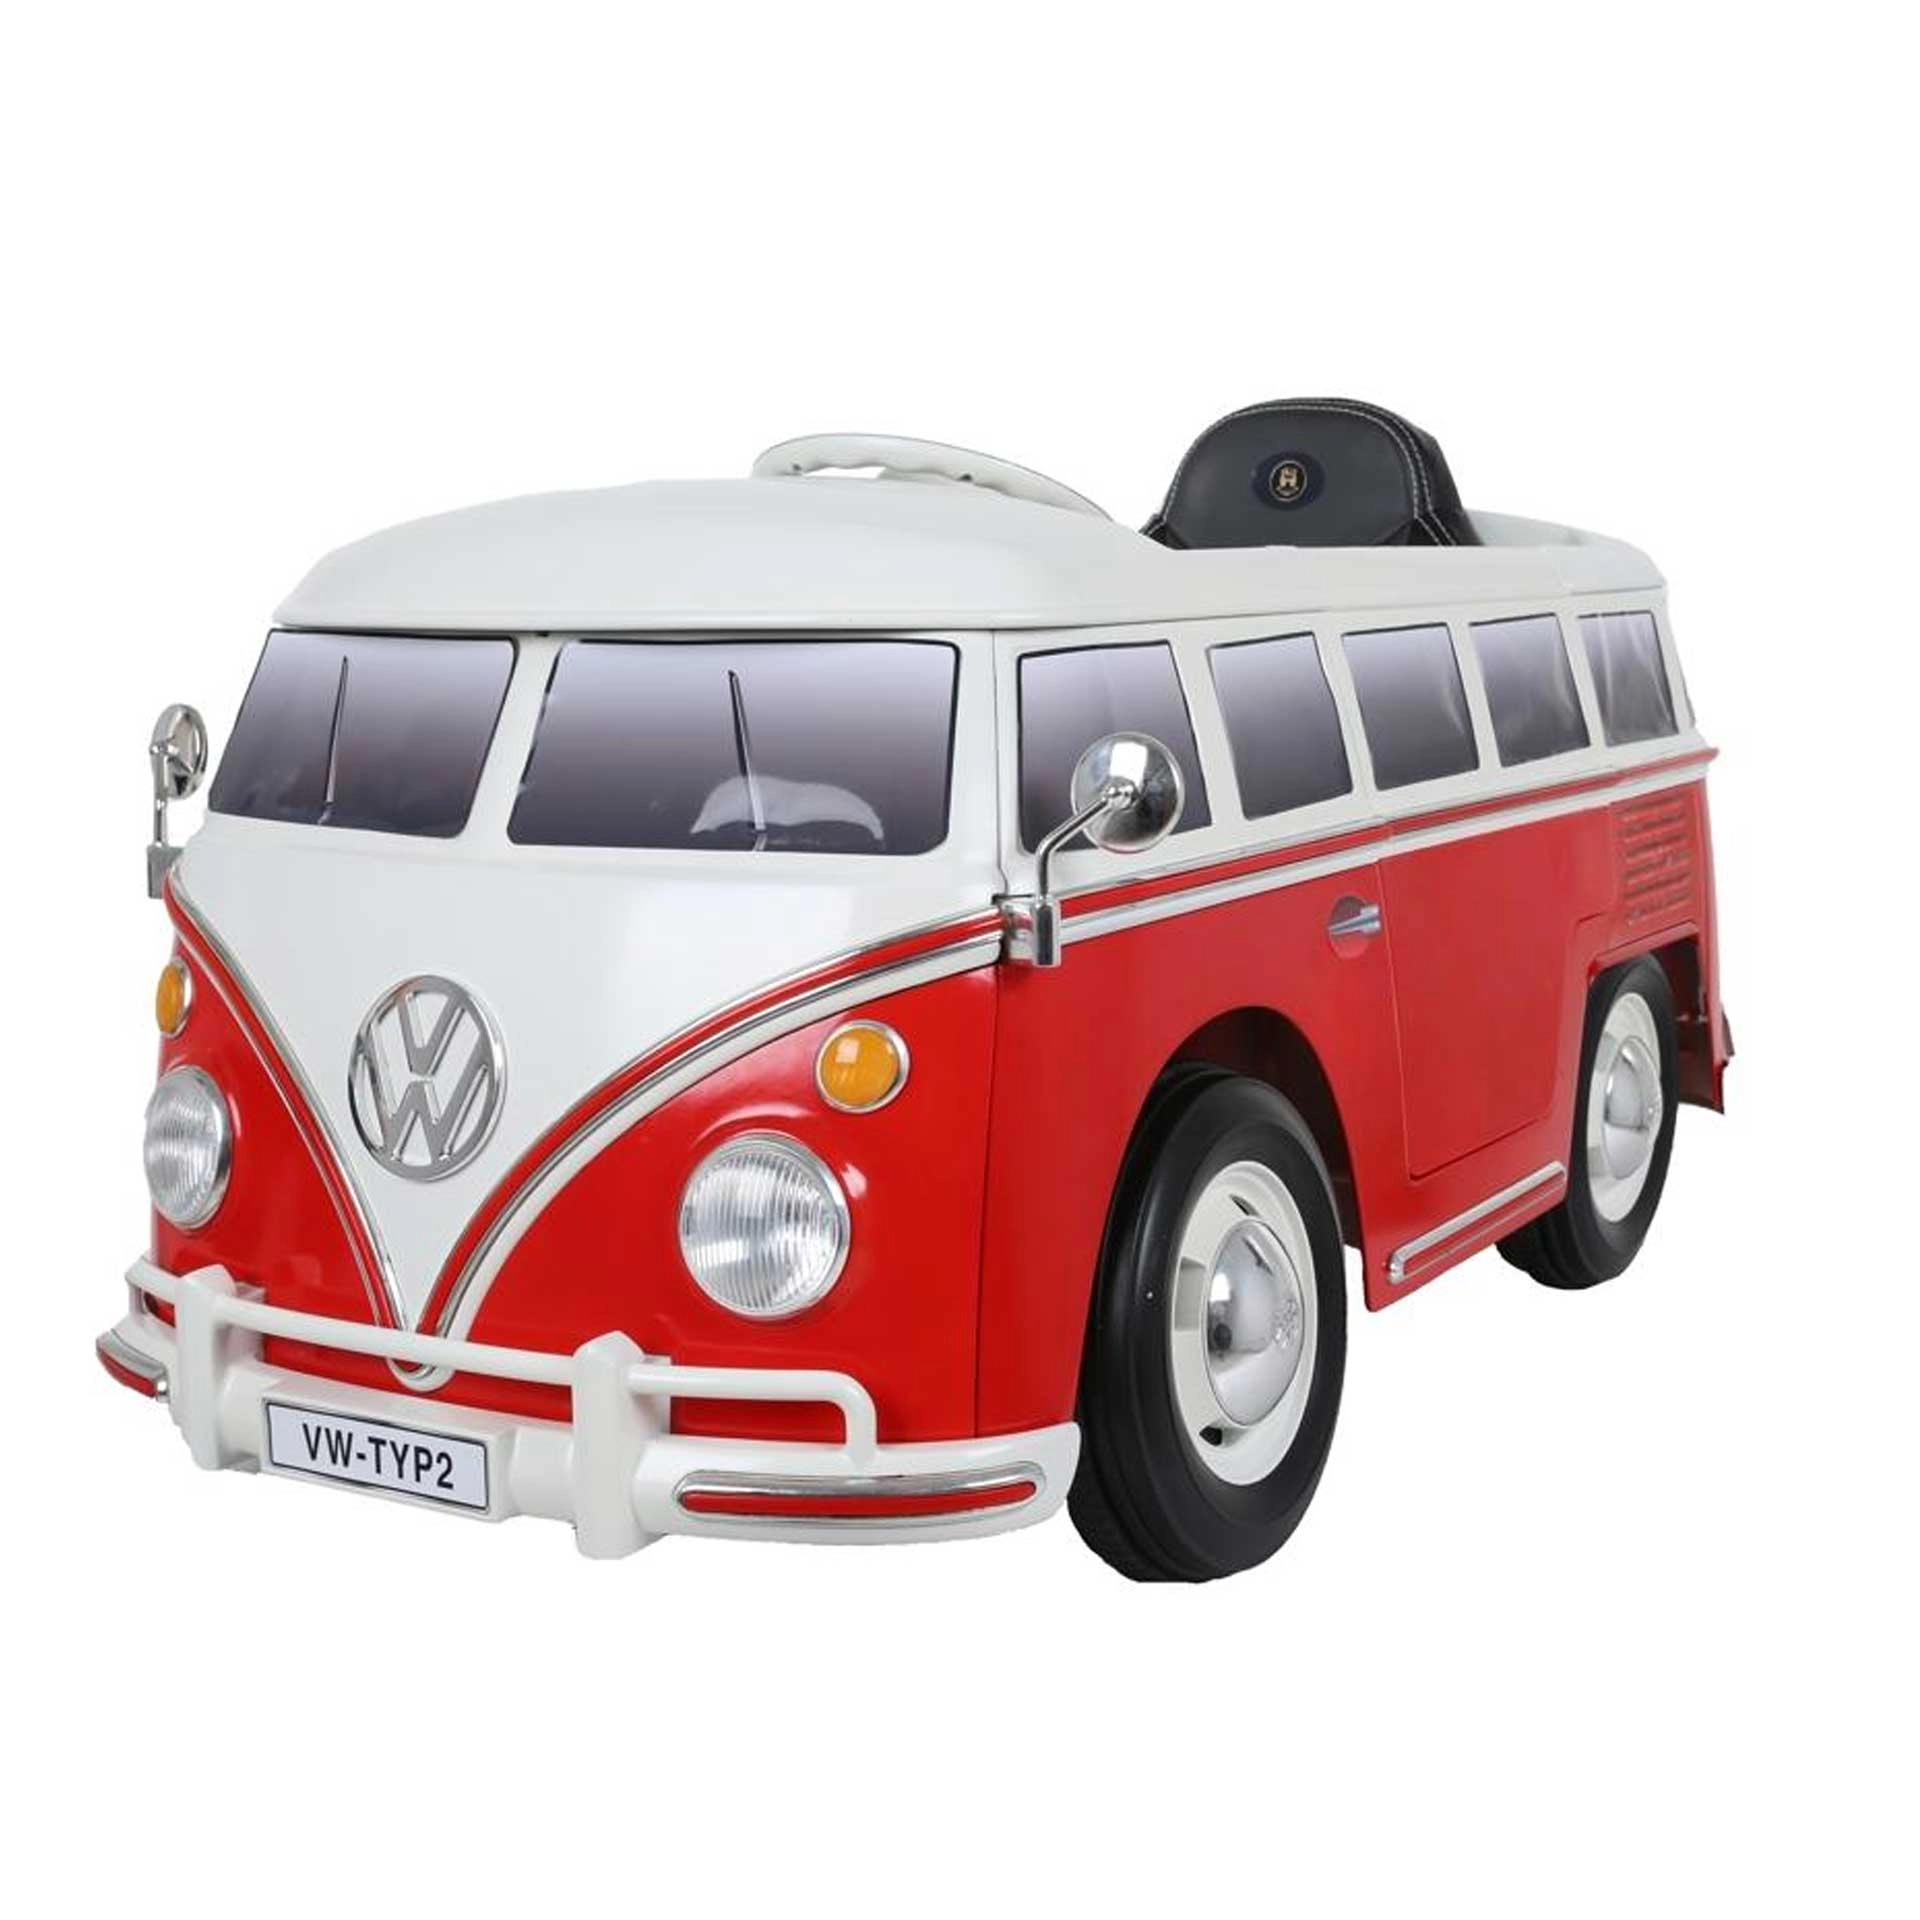 Rollplay Volkswagen Elektrofahrzeug mit Fernsteuerung und Rückwärtsgang Bus T2 RC 12 V